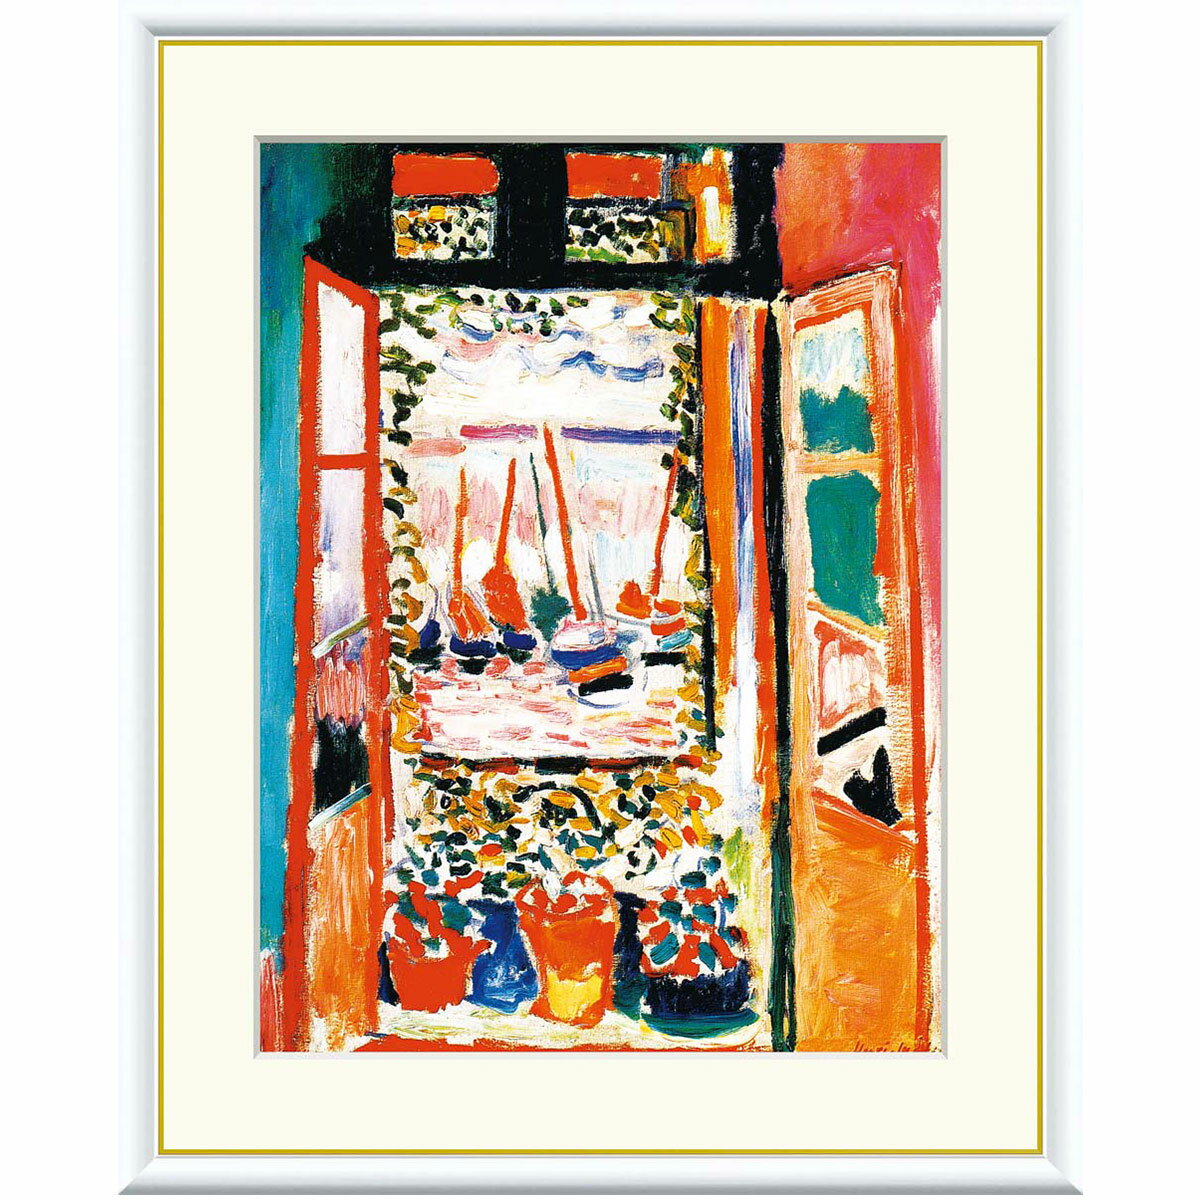 アンリ・マティス 「コリウールの窓」 F8号（額外寸61x49.5cm） 高精彩工芸画＋手彩入り 額付き 複製画 作品 絵画 美術品 アート 表現主義 フォーヴィズム マチス ワシントンナショナルギャラリー（米）所蔵 オープンウィンドウ